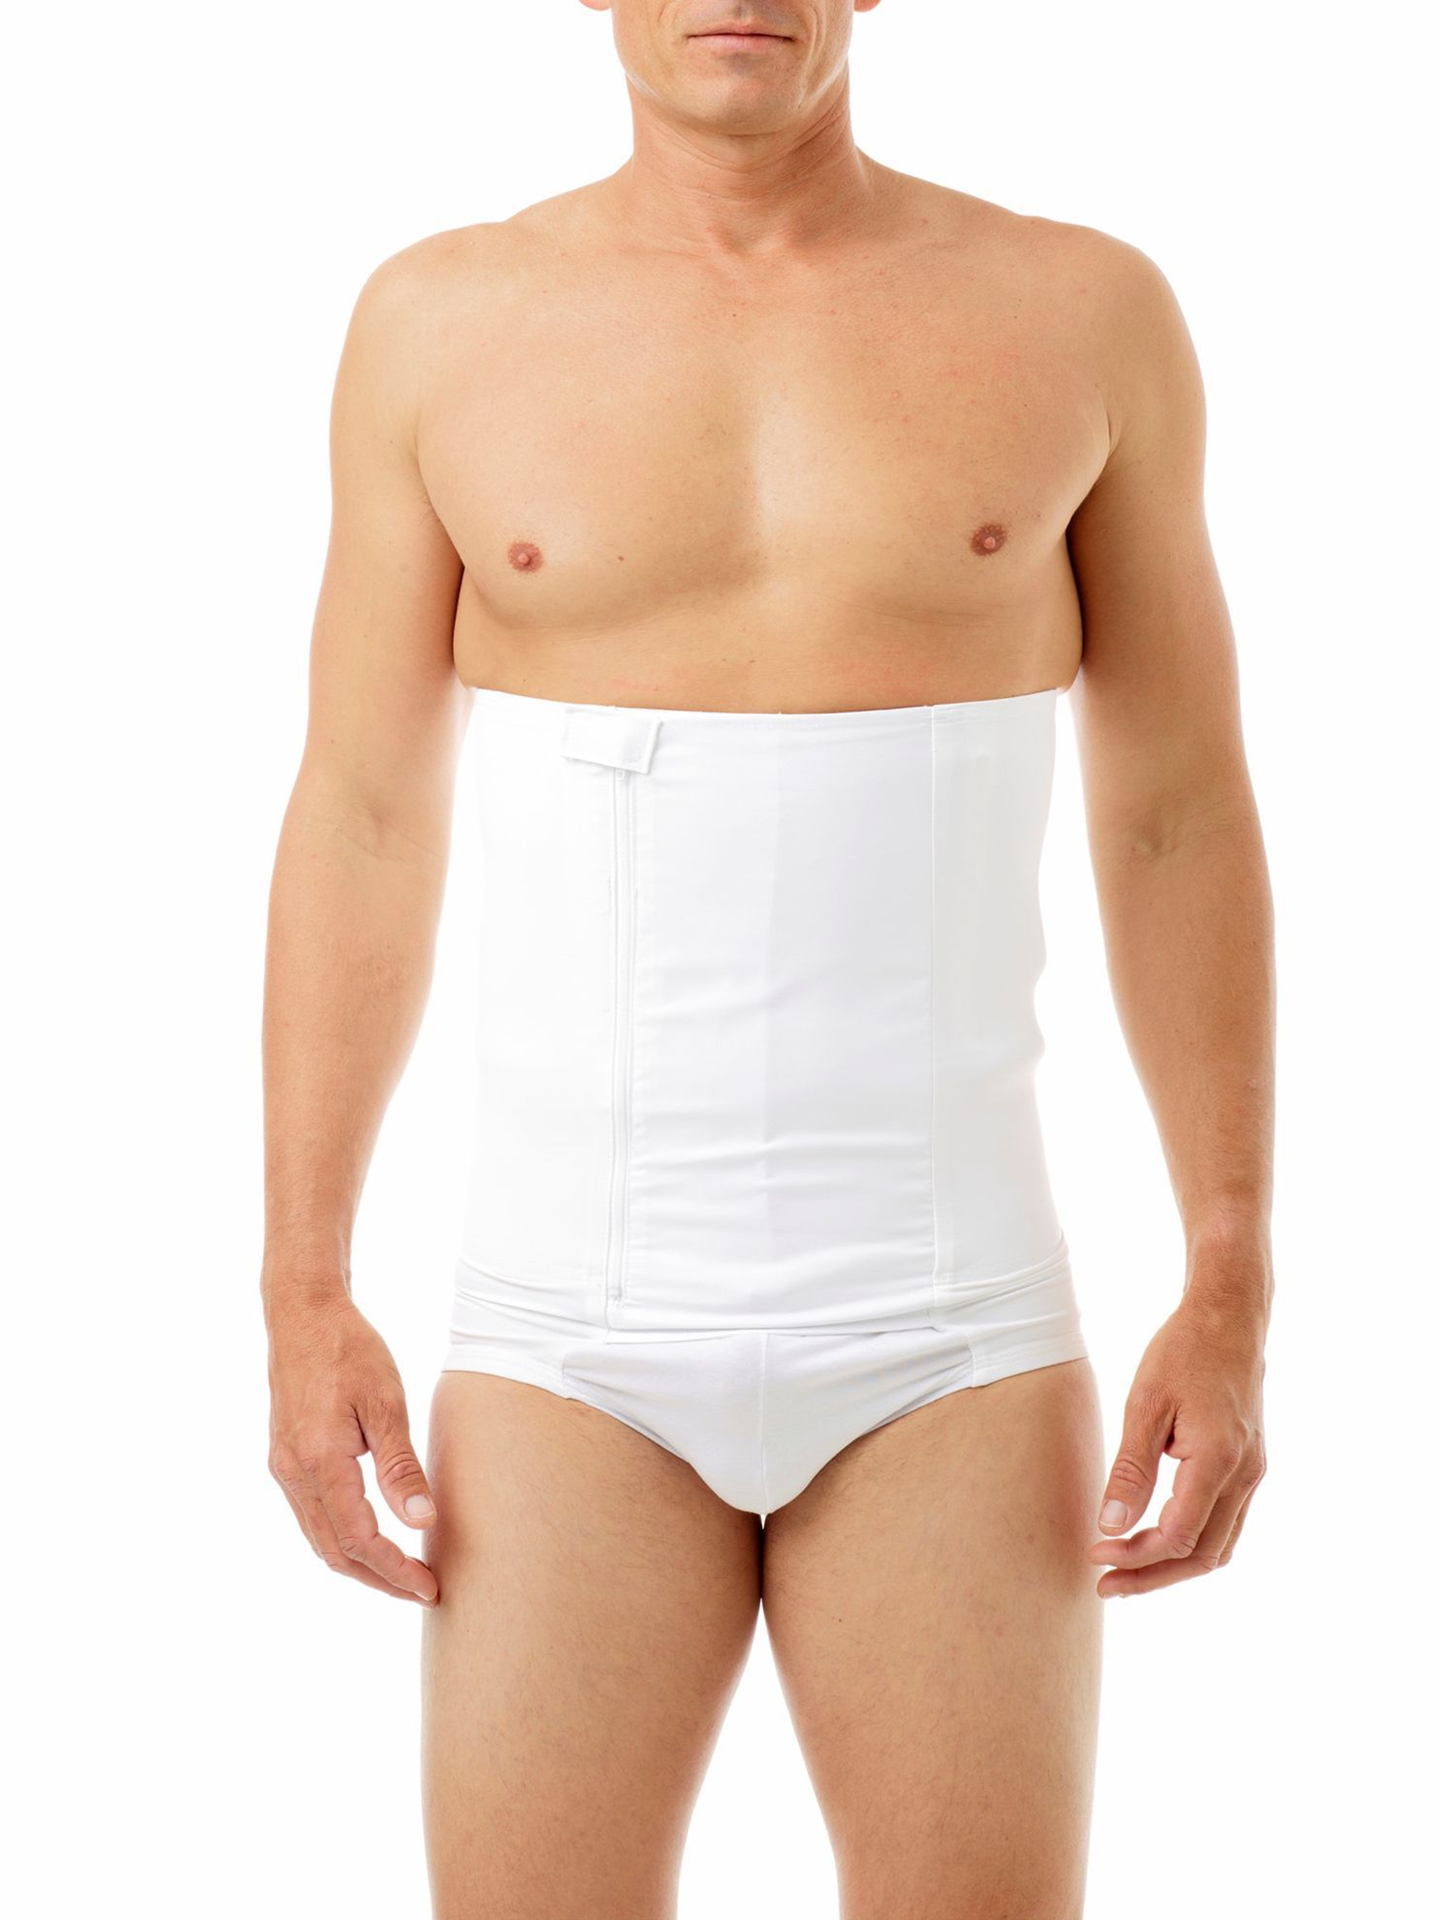 Belly Buster Support Brief, Men's Compression Underwear